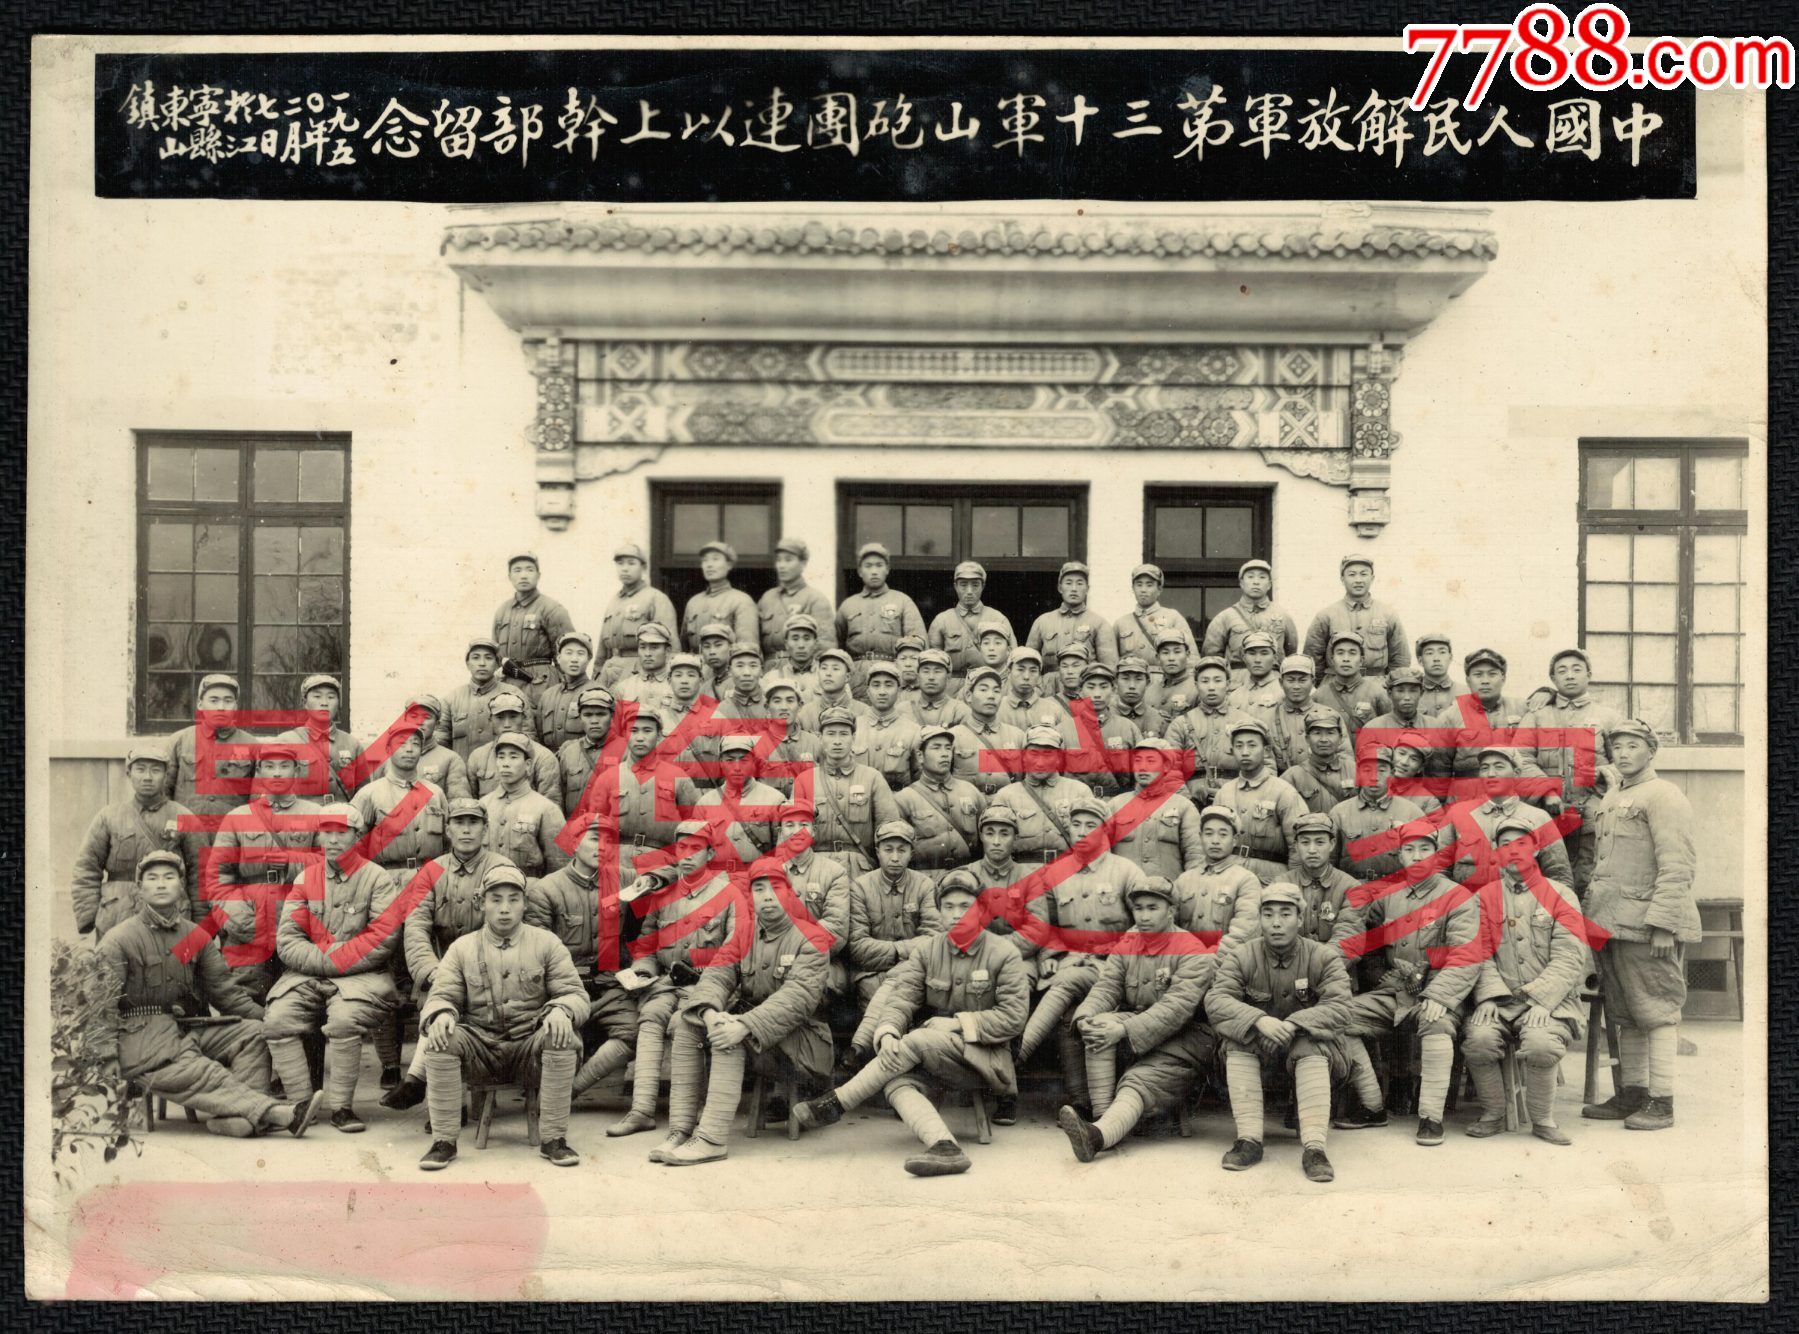 中国工农红军第十三军峰山革命纪念馆正式落成 - 哔哩哔哩